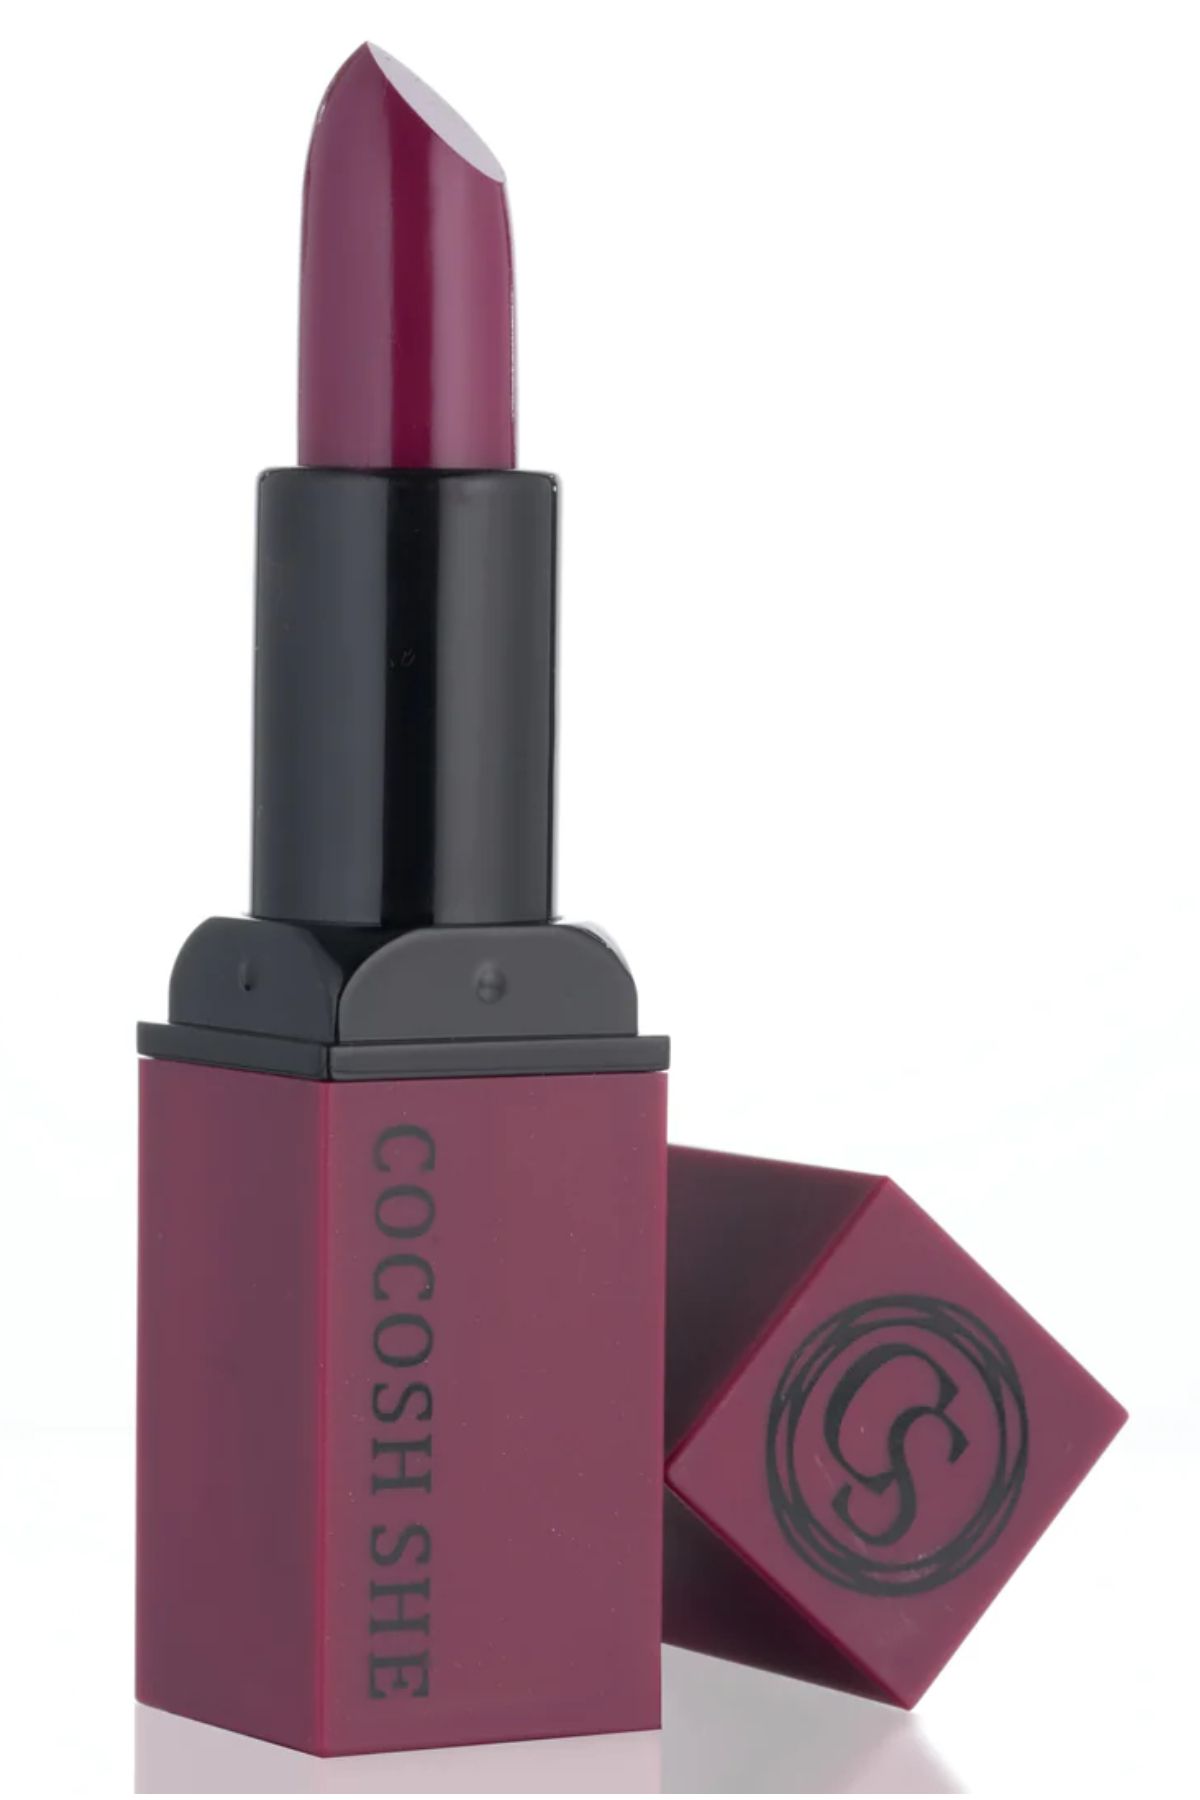 Cocosh She Color Creamy Lipstick Ruj 02 Boysenberry, Nemlendirici Etki, Kremsi Formül, Yumuşak Bitişli